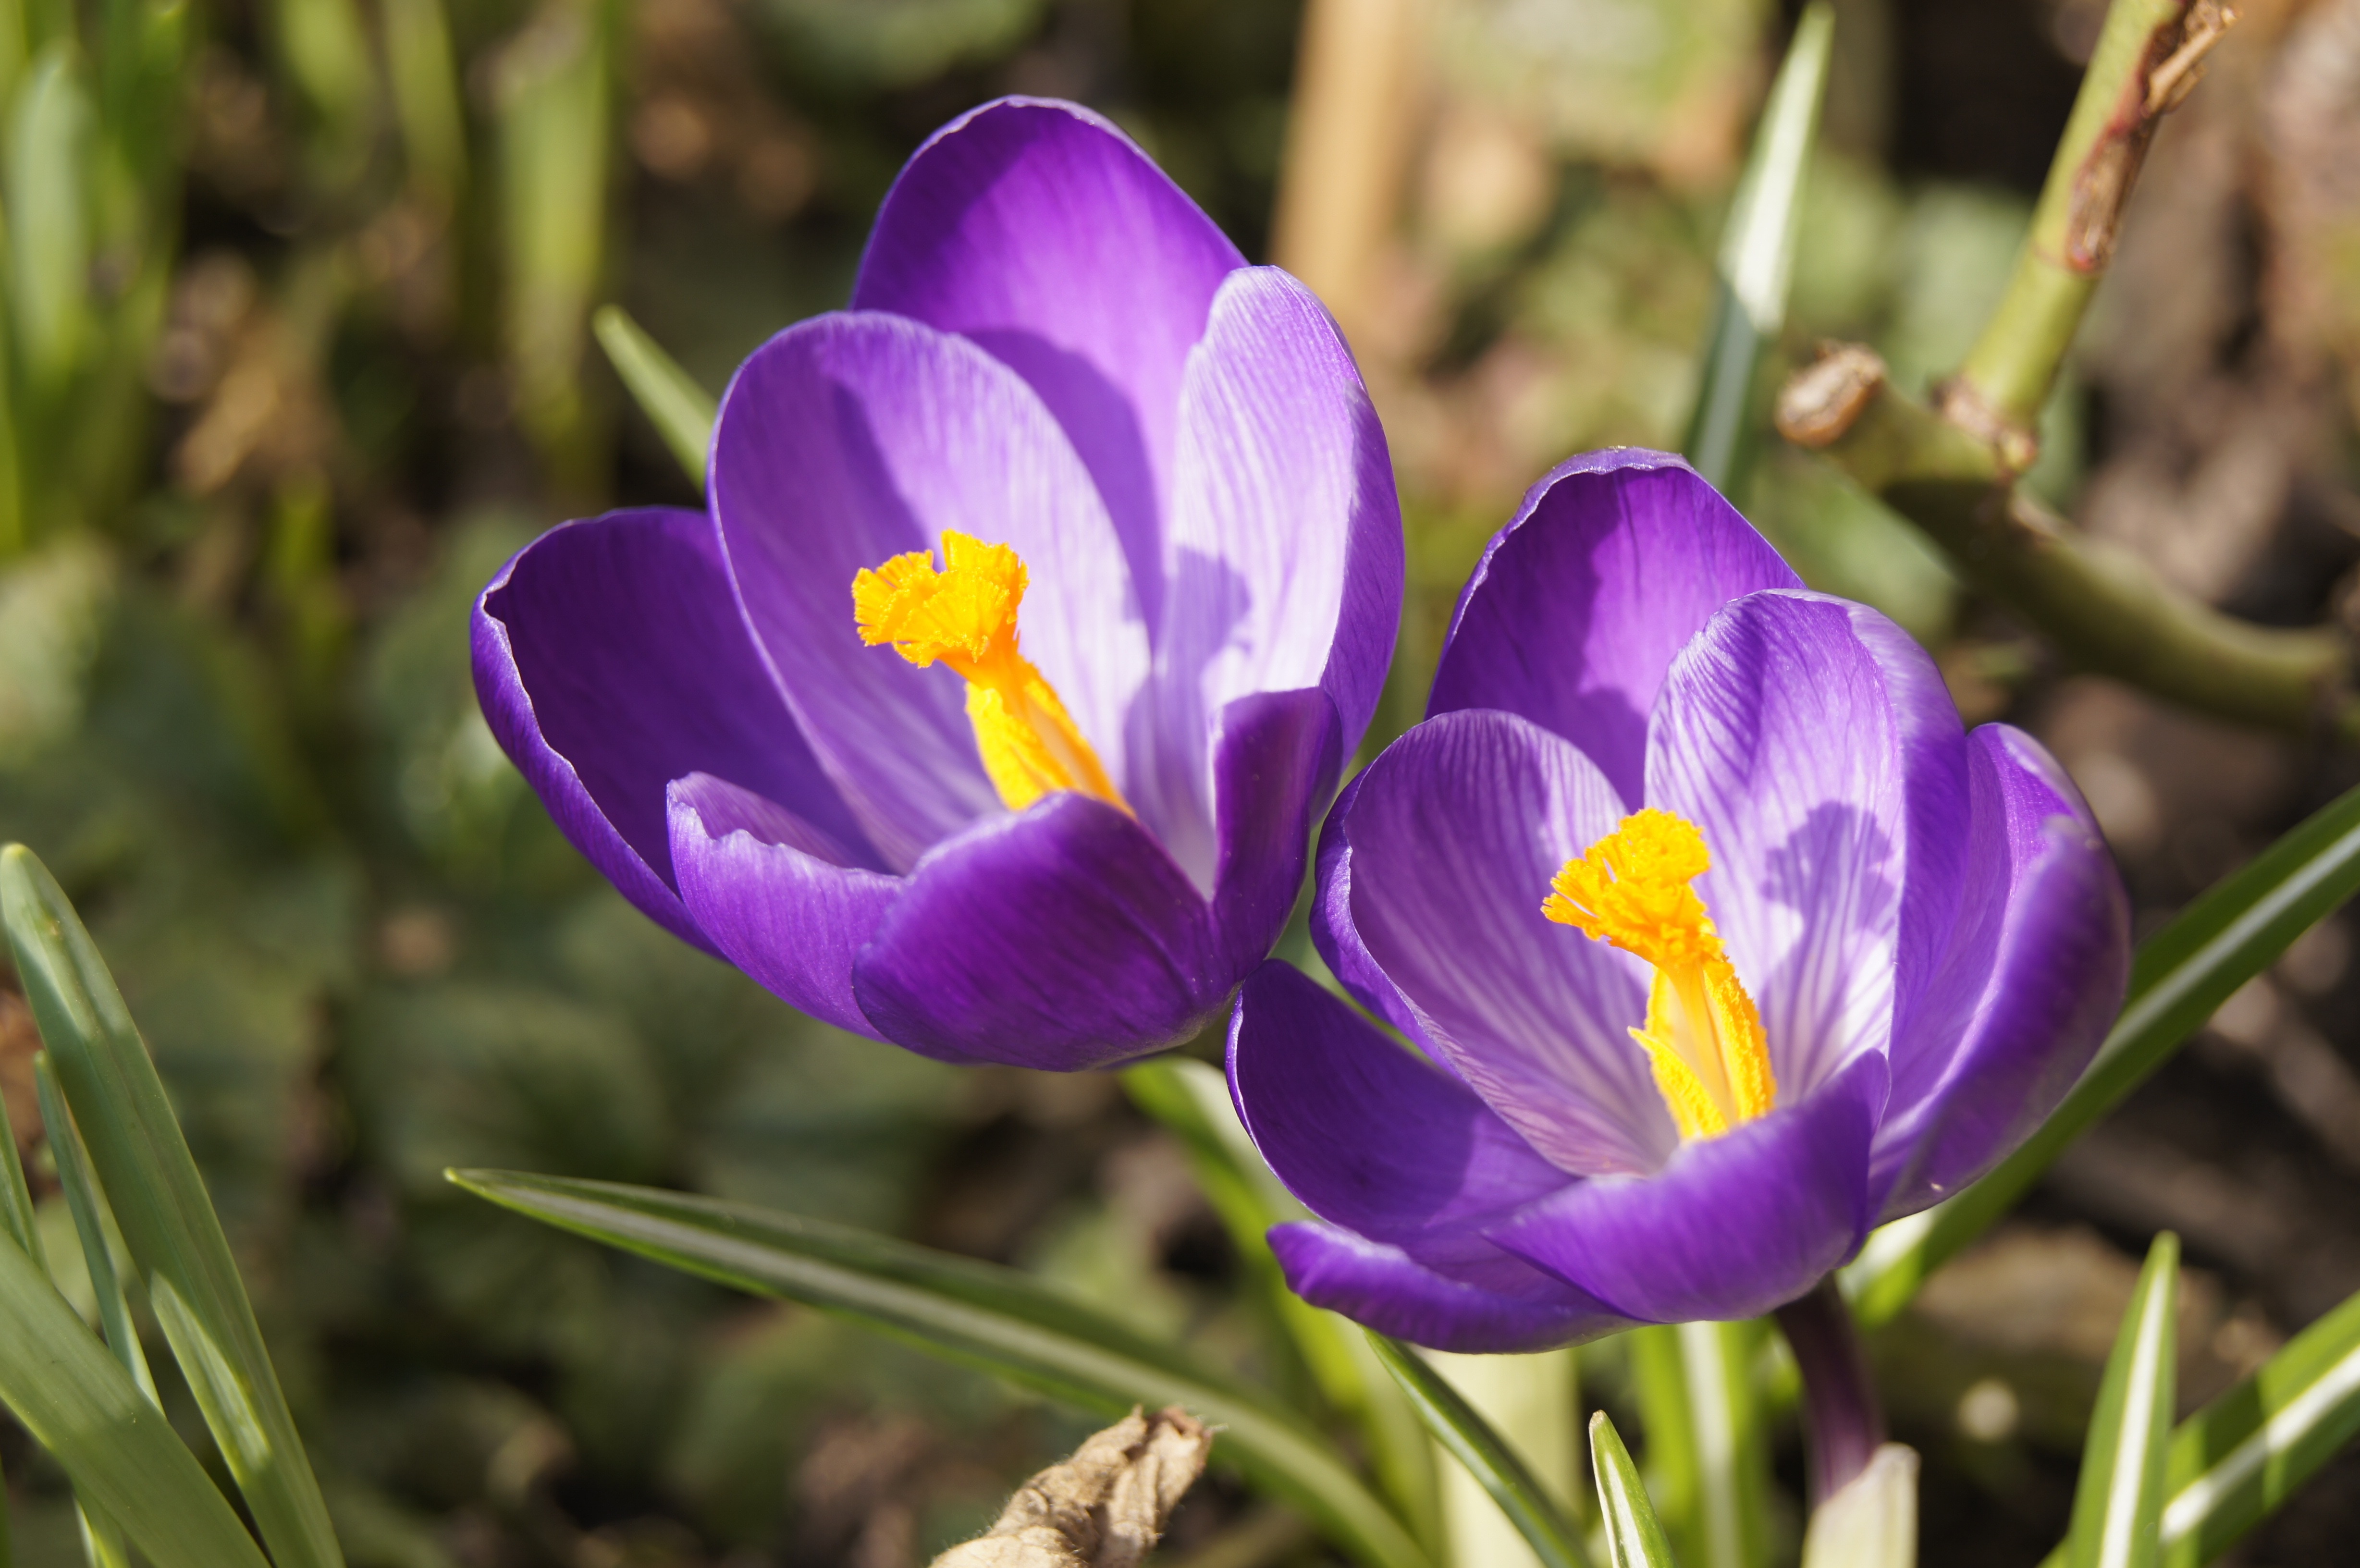 two purple 6-petaled flowers